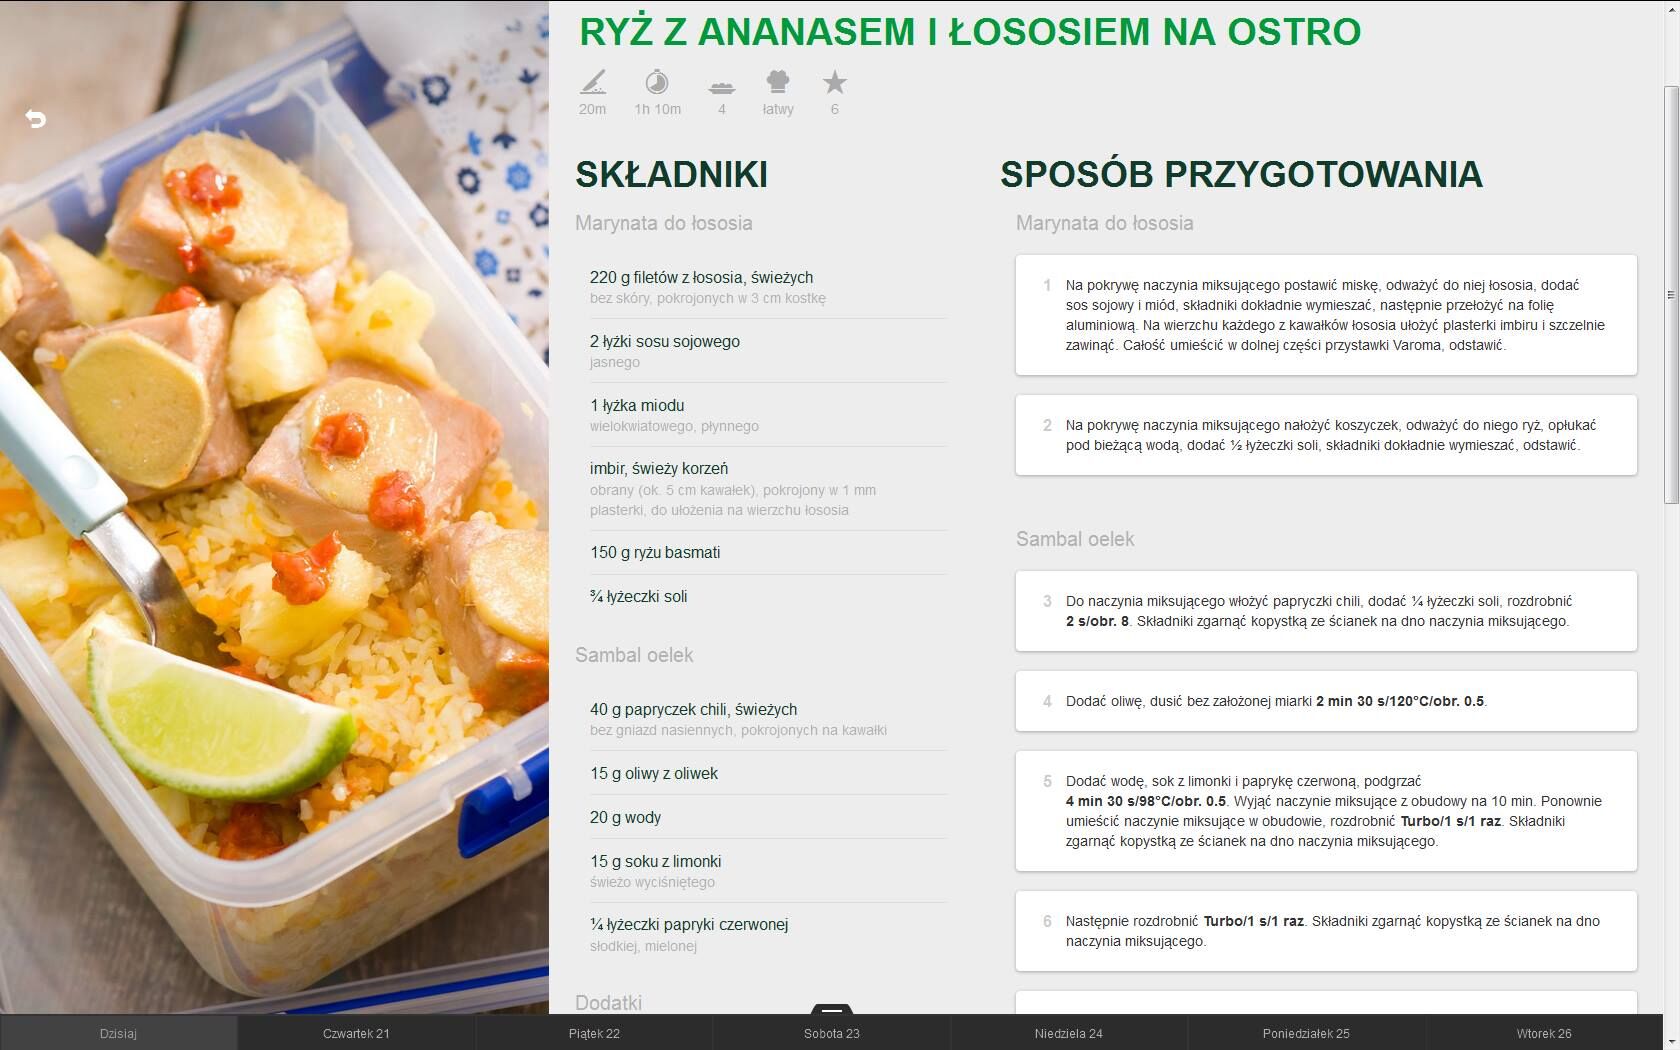 Lunch box - Ryż z ananasem i łososiem na ostro1-1.jpeg